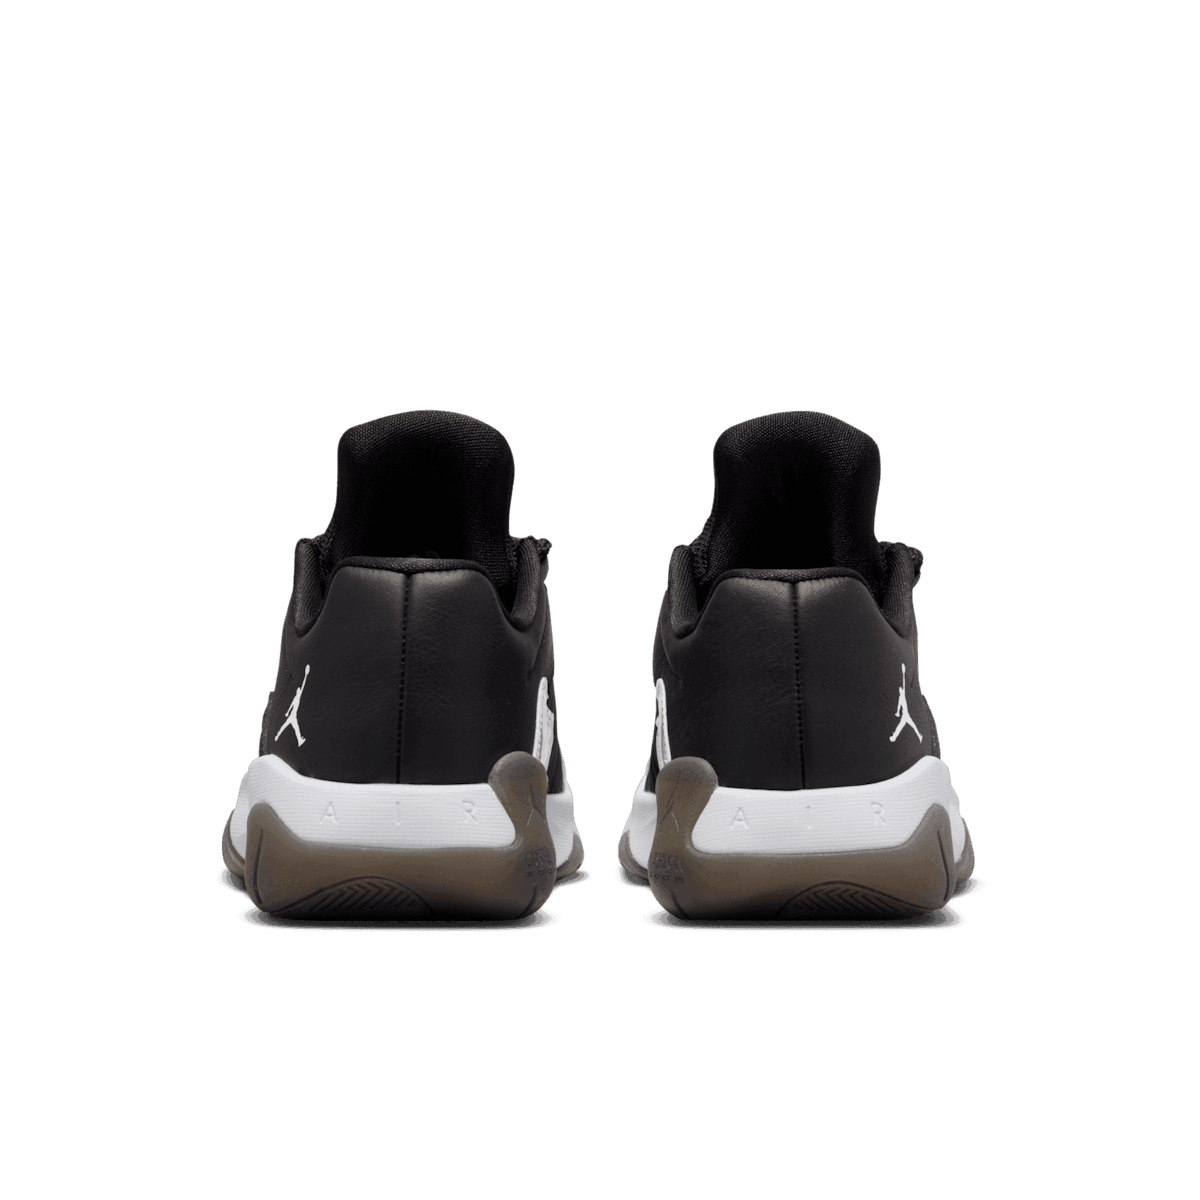 Air Jordan 11 CMFT Low Shoes in Black Angle 3